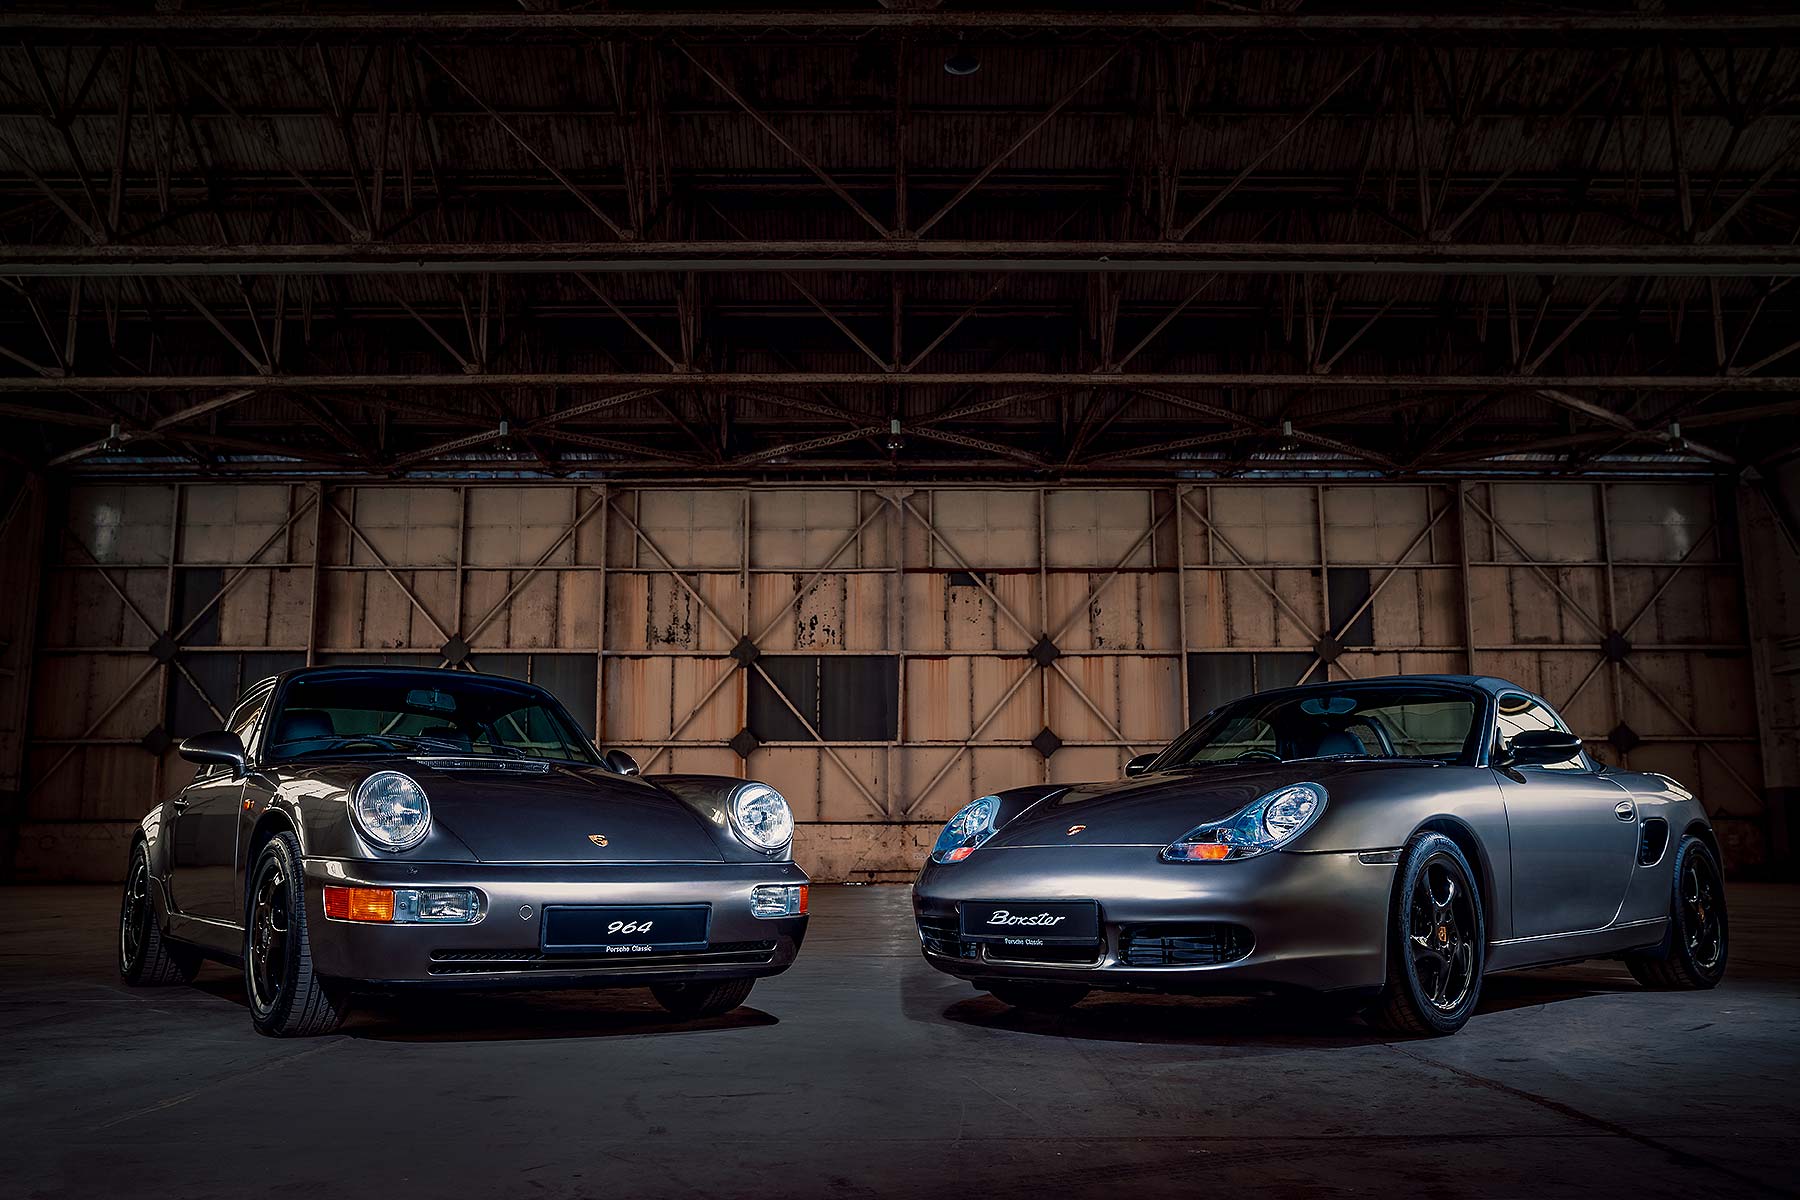 Porsche restorations at the NEC Classic Motor Show